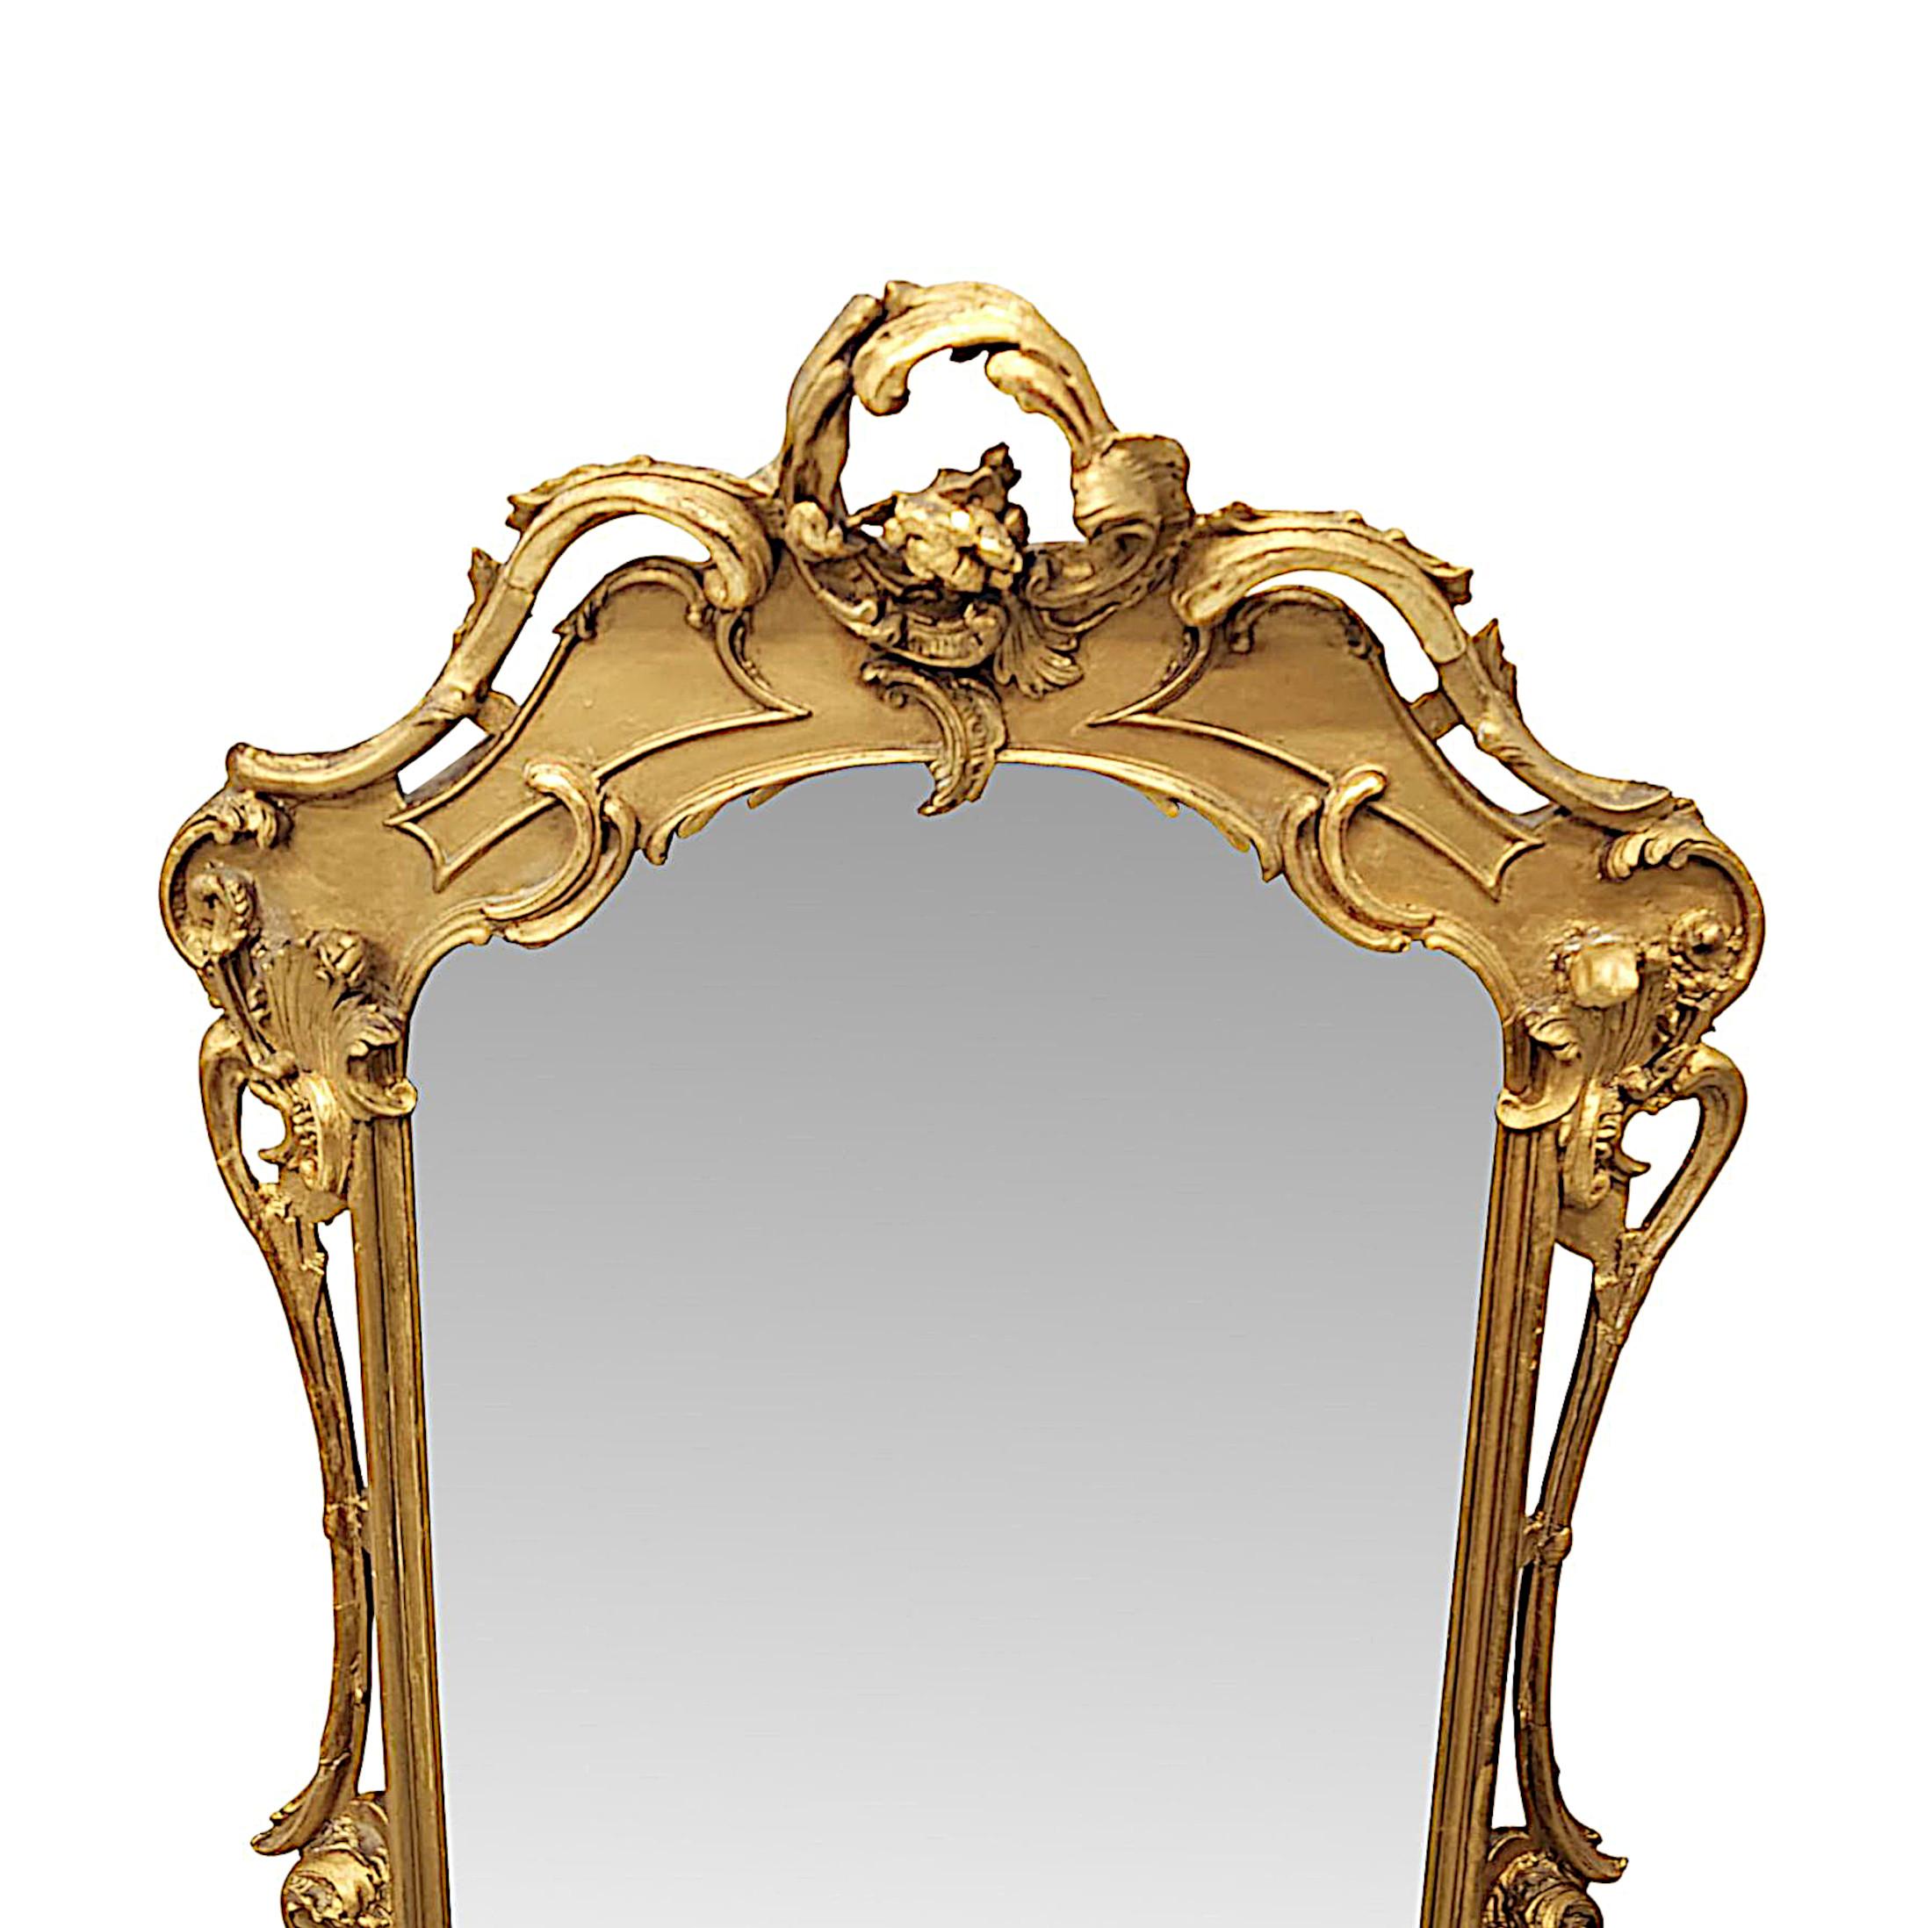 Ein seltener Spiegel aus vergoldetem Holz aus dem 19. Jahrhundert, der fein von Hand geschnitzt und von außergewöhnlicher Qualität ist.  Die ursprüngliche, geformte Spiegelglasplatte ist in einem atemberaubenden durchbrochenen, geformten und